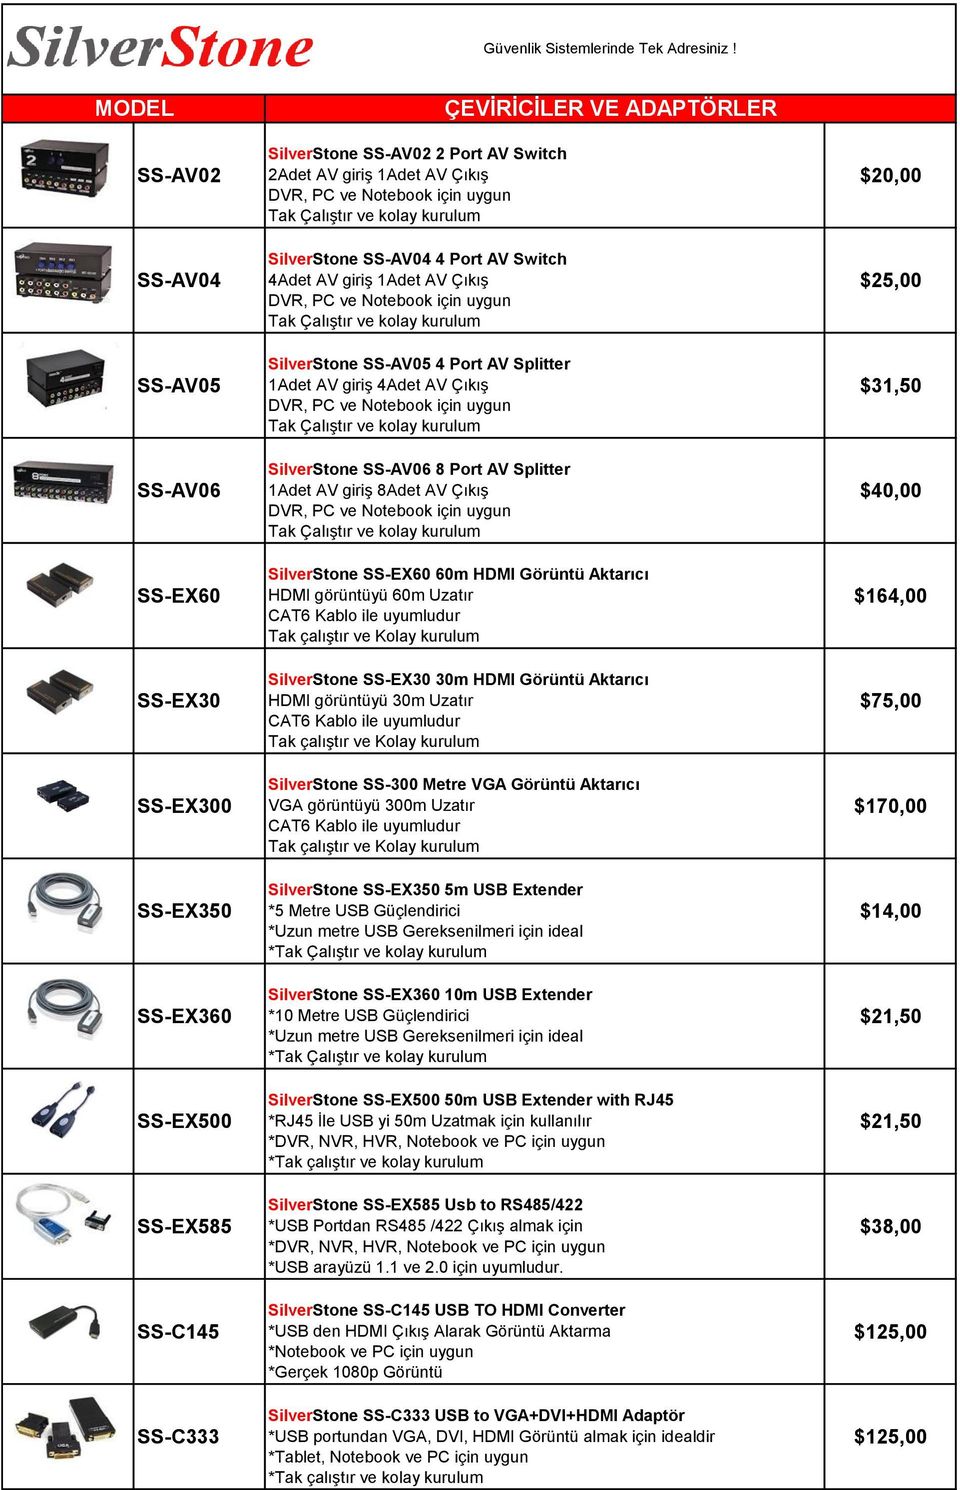 SS-EX60 60m HDMI Görüntü Aktarıcı HDMI görüntüyü 60m Uzatır CAT6 Kablo ile uyumludur Tak çalıştır ve Kolay kurulum SilverStone SS-EX30 30m HDMI Görüntü Aktarıcı HDMI görüntüyü 30m Uzatır CAT6 Kablo